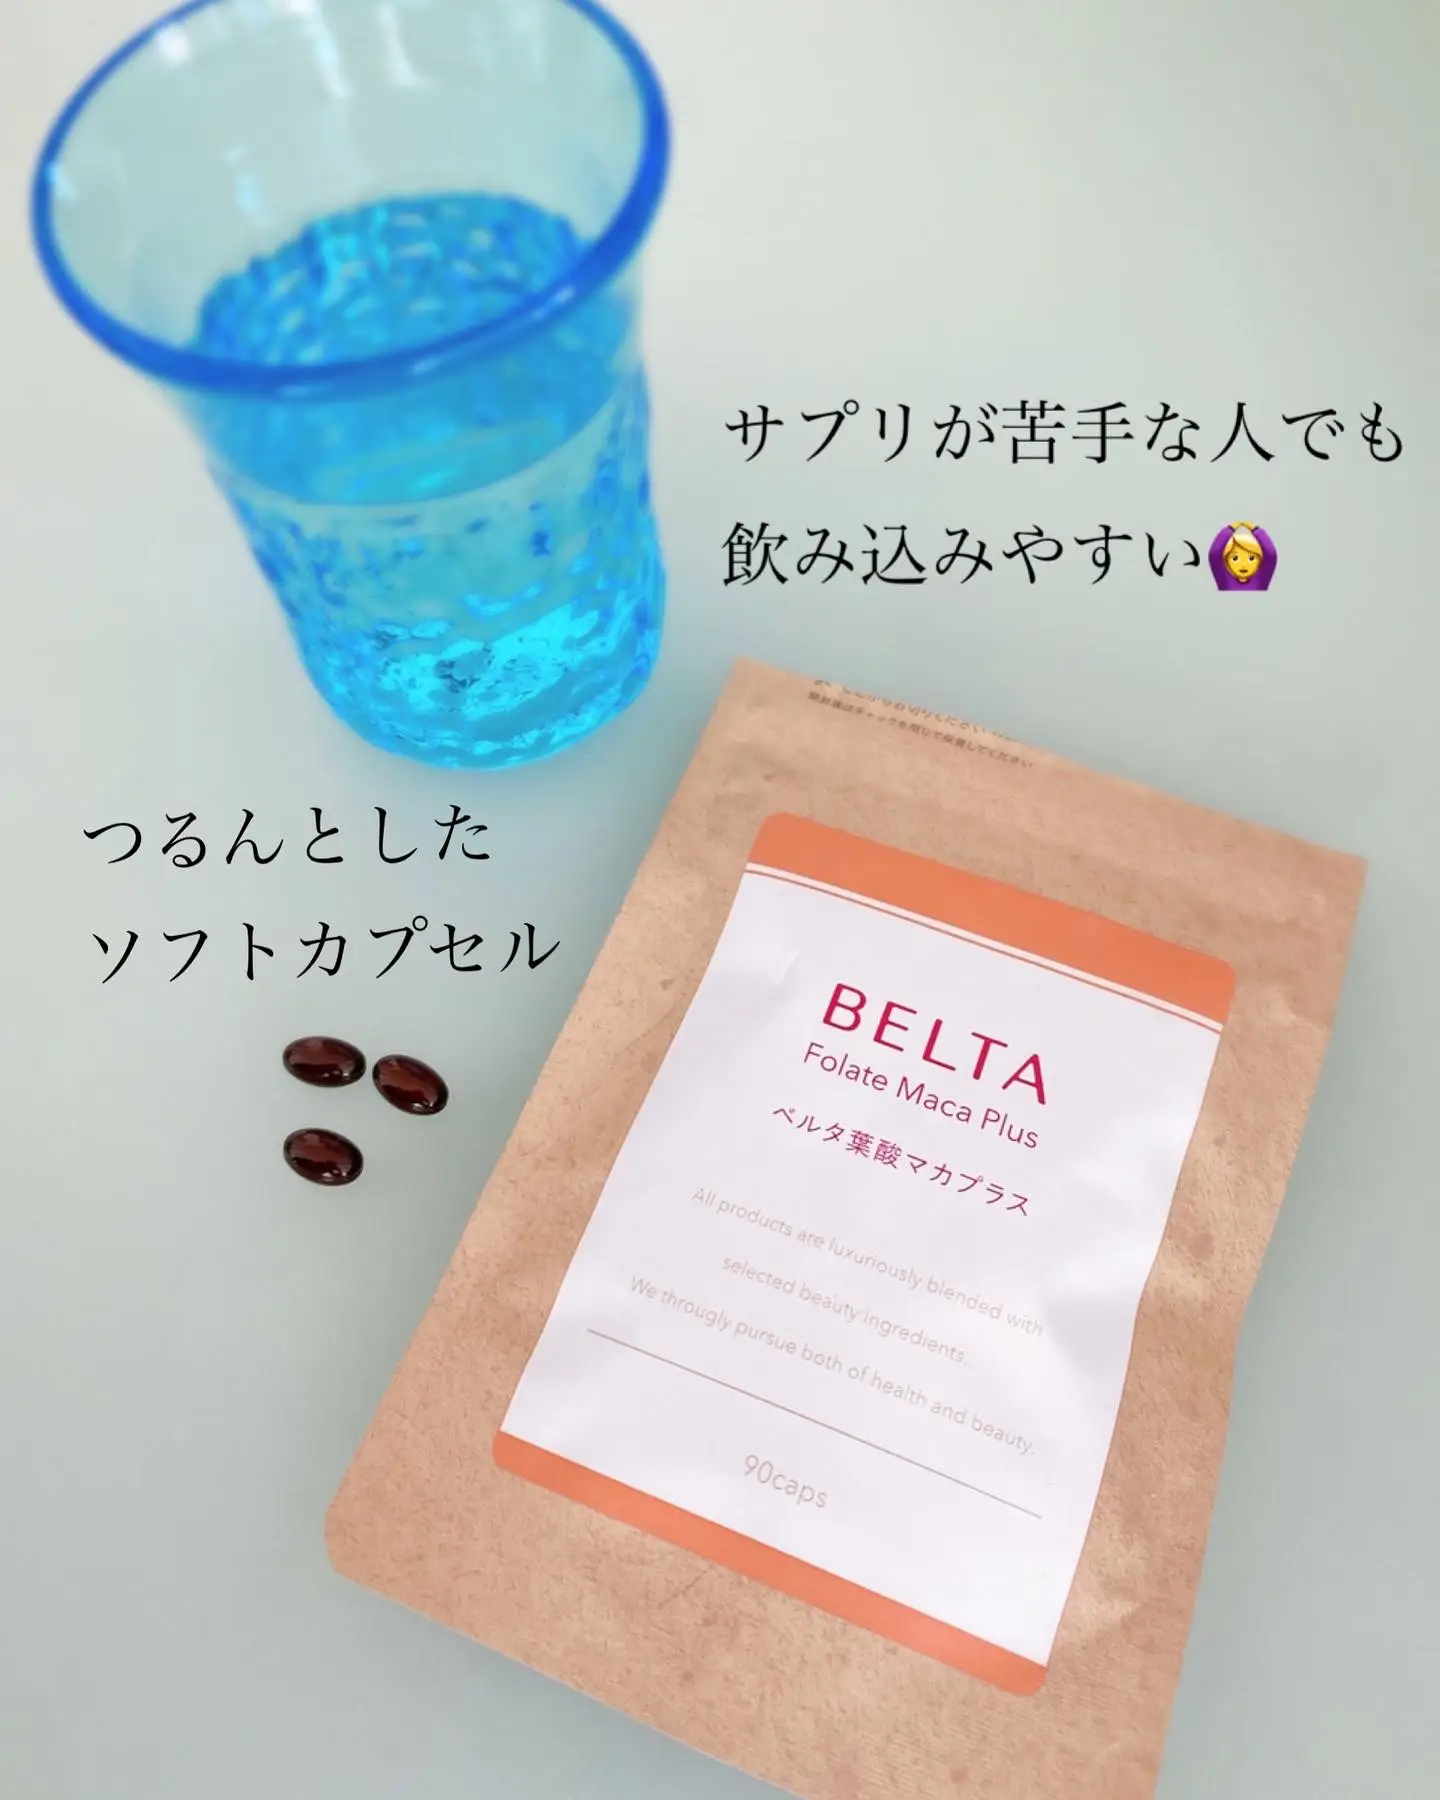 ベルタ葉酸マカプラス | yukariが投稿したフォトブック | Lemon8